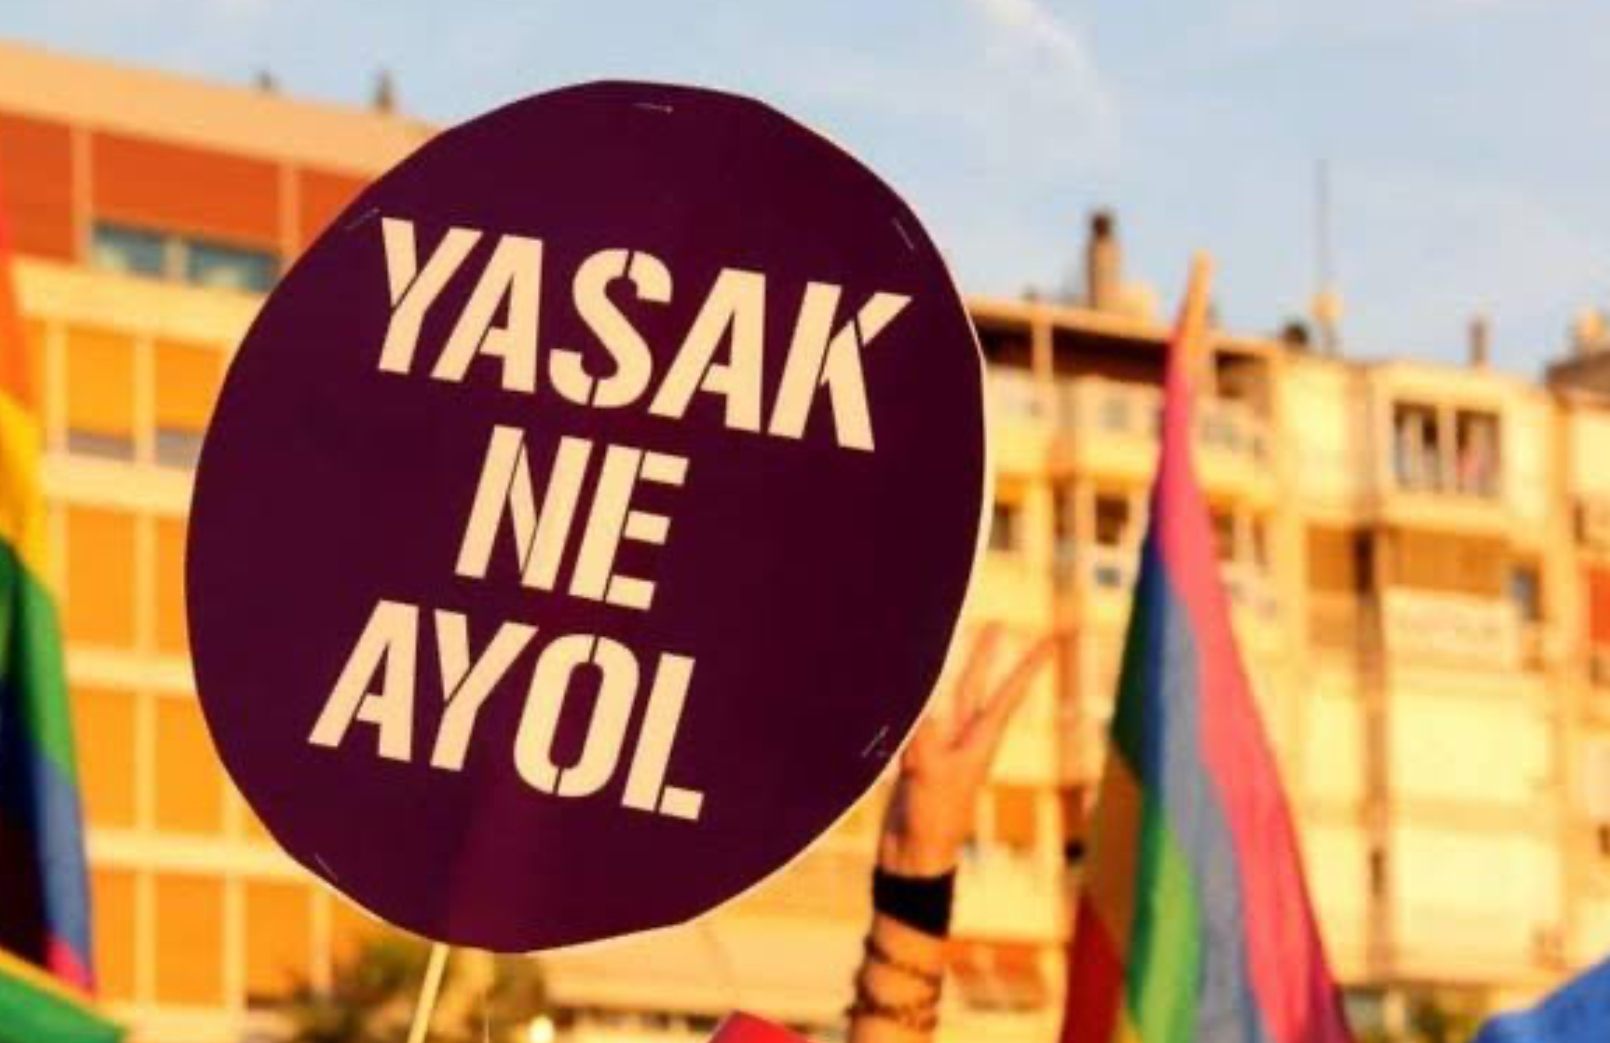 Aydın Valiliği, Onur Haftası’nı yasakladı! | Kaos GL - LGBTİ+ Haber Portalı Haber